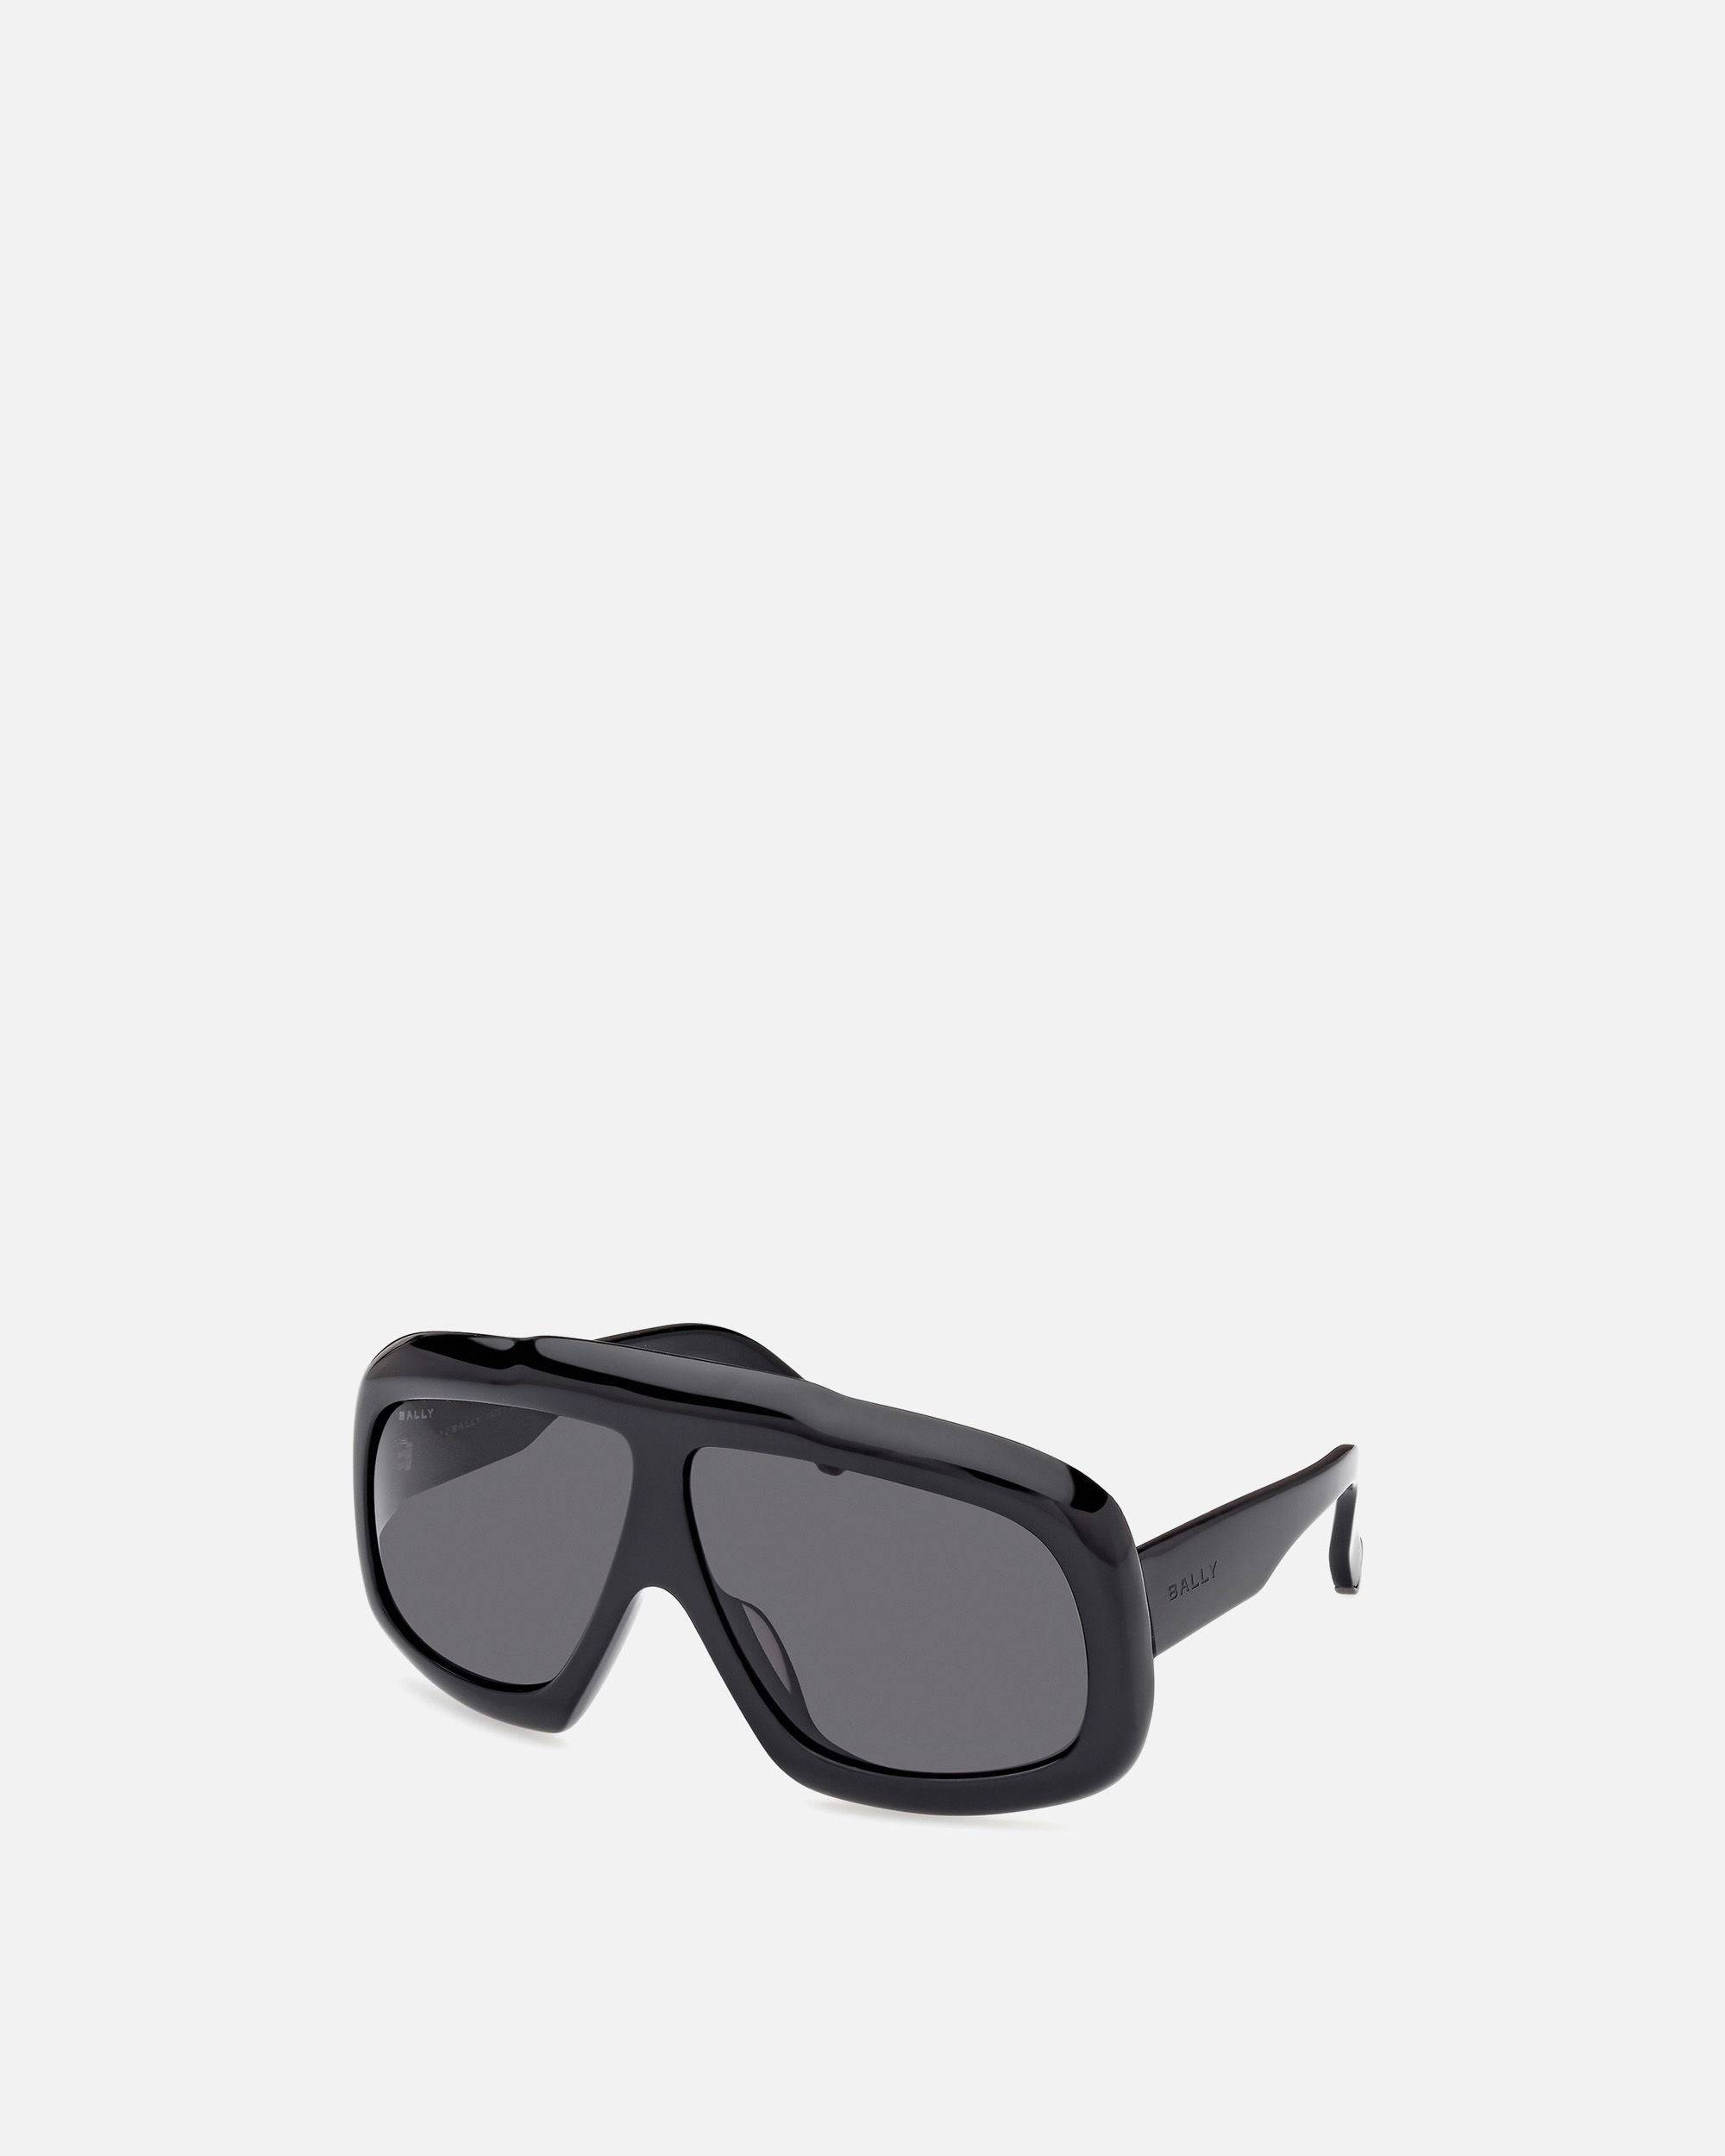 Eyger Sonnenbrille | Unisex-Accessoires | Schwarzes Acetat mit rauchgrauen Gläsern | Bally | Still Life 3/4 Seite